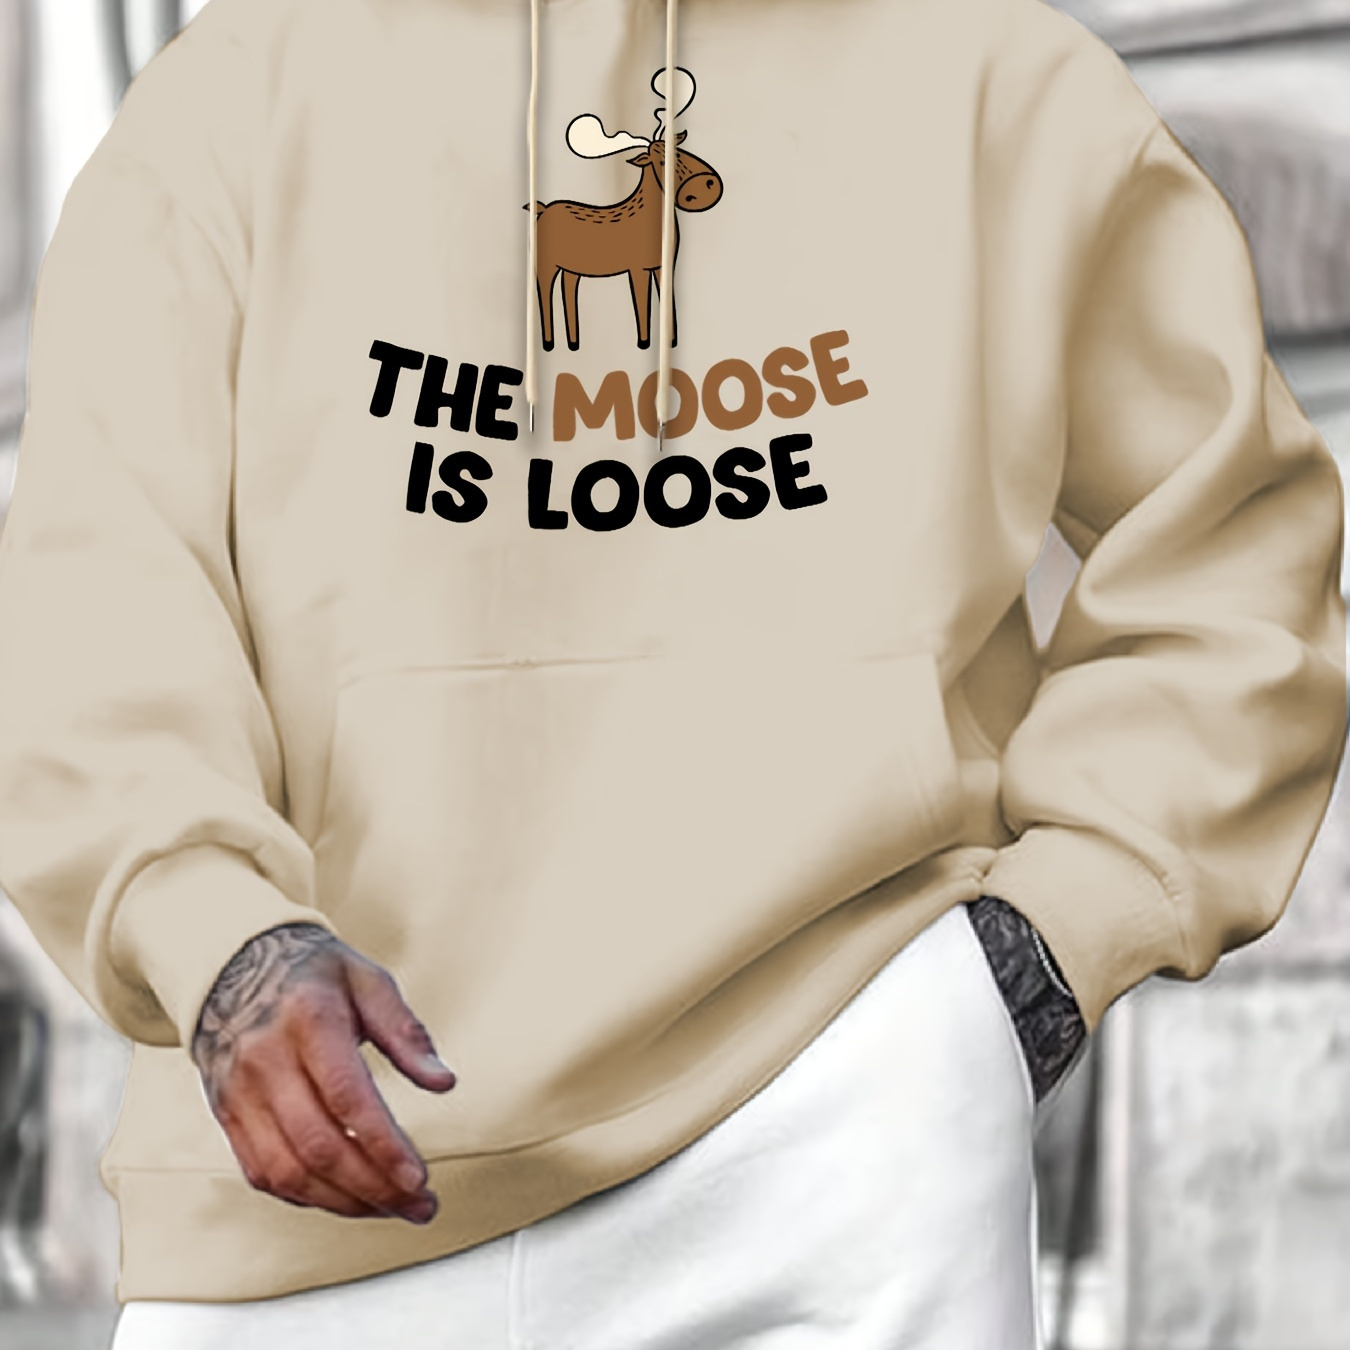 

The Moose Is Loose Print Kangaroo Pocket Hoodie, Casual Long Sleeve Hoodies Pullover Sweatshirt, Men's Clothing, For Fall Winter